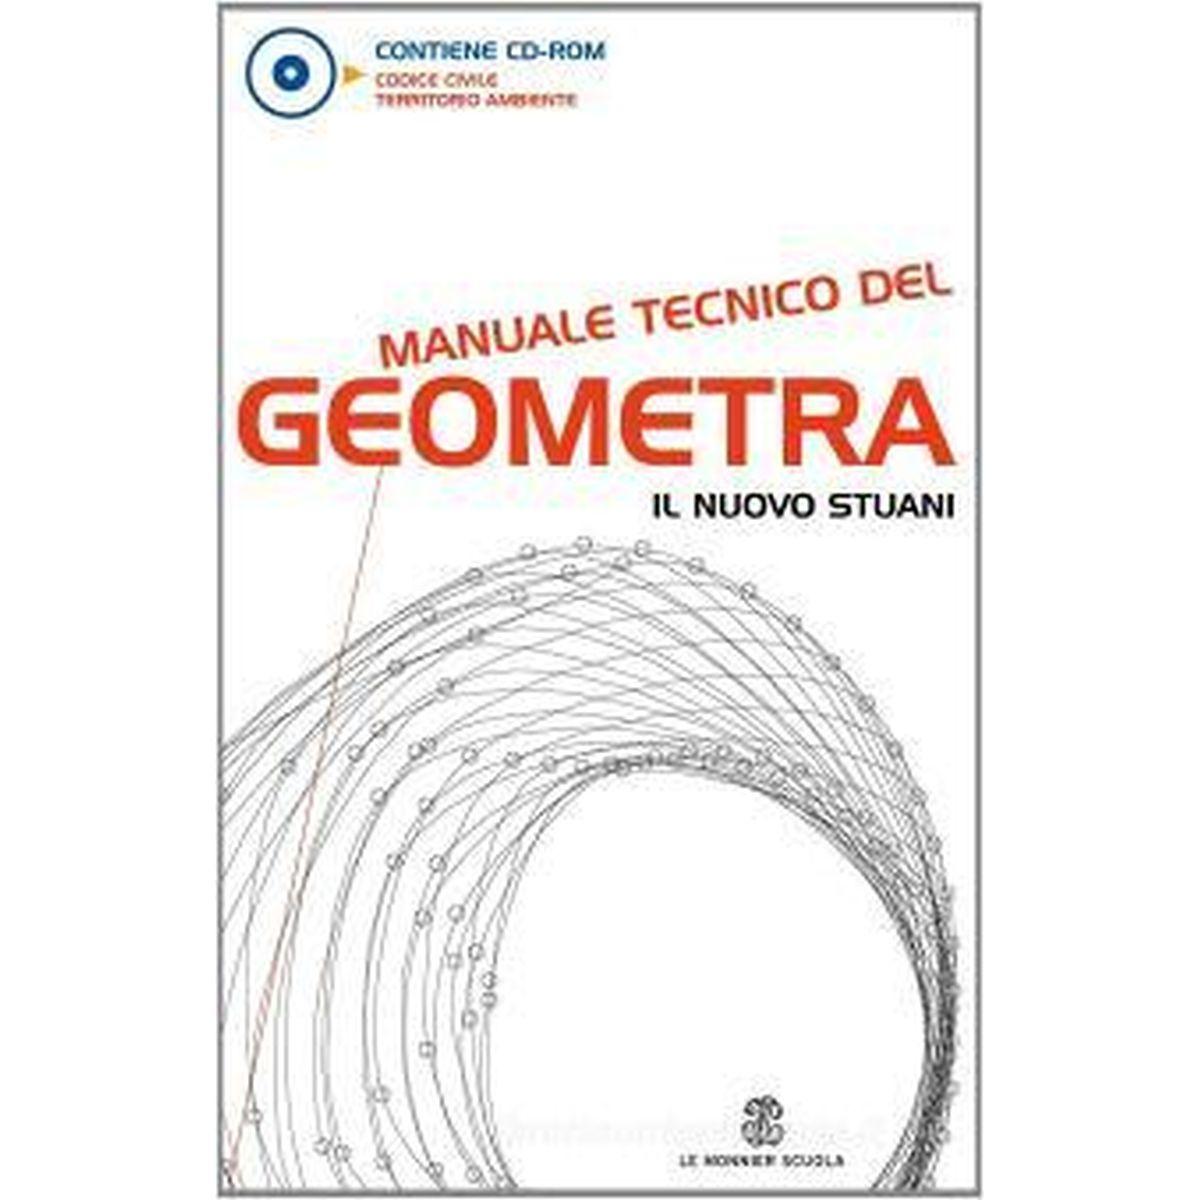 Manuale tecnico del geometra il nuovo stuani